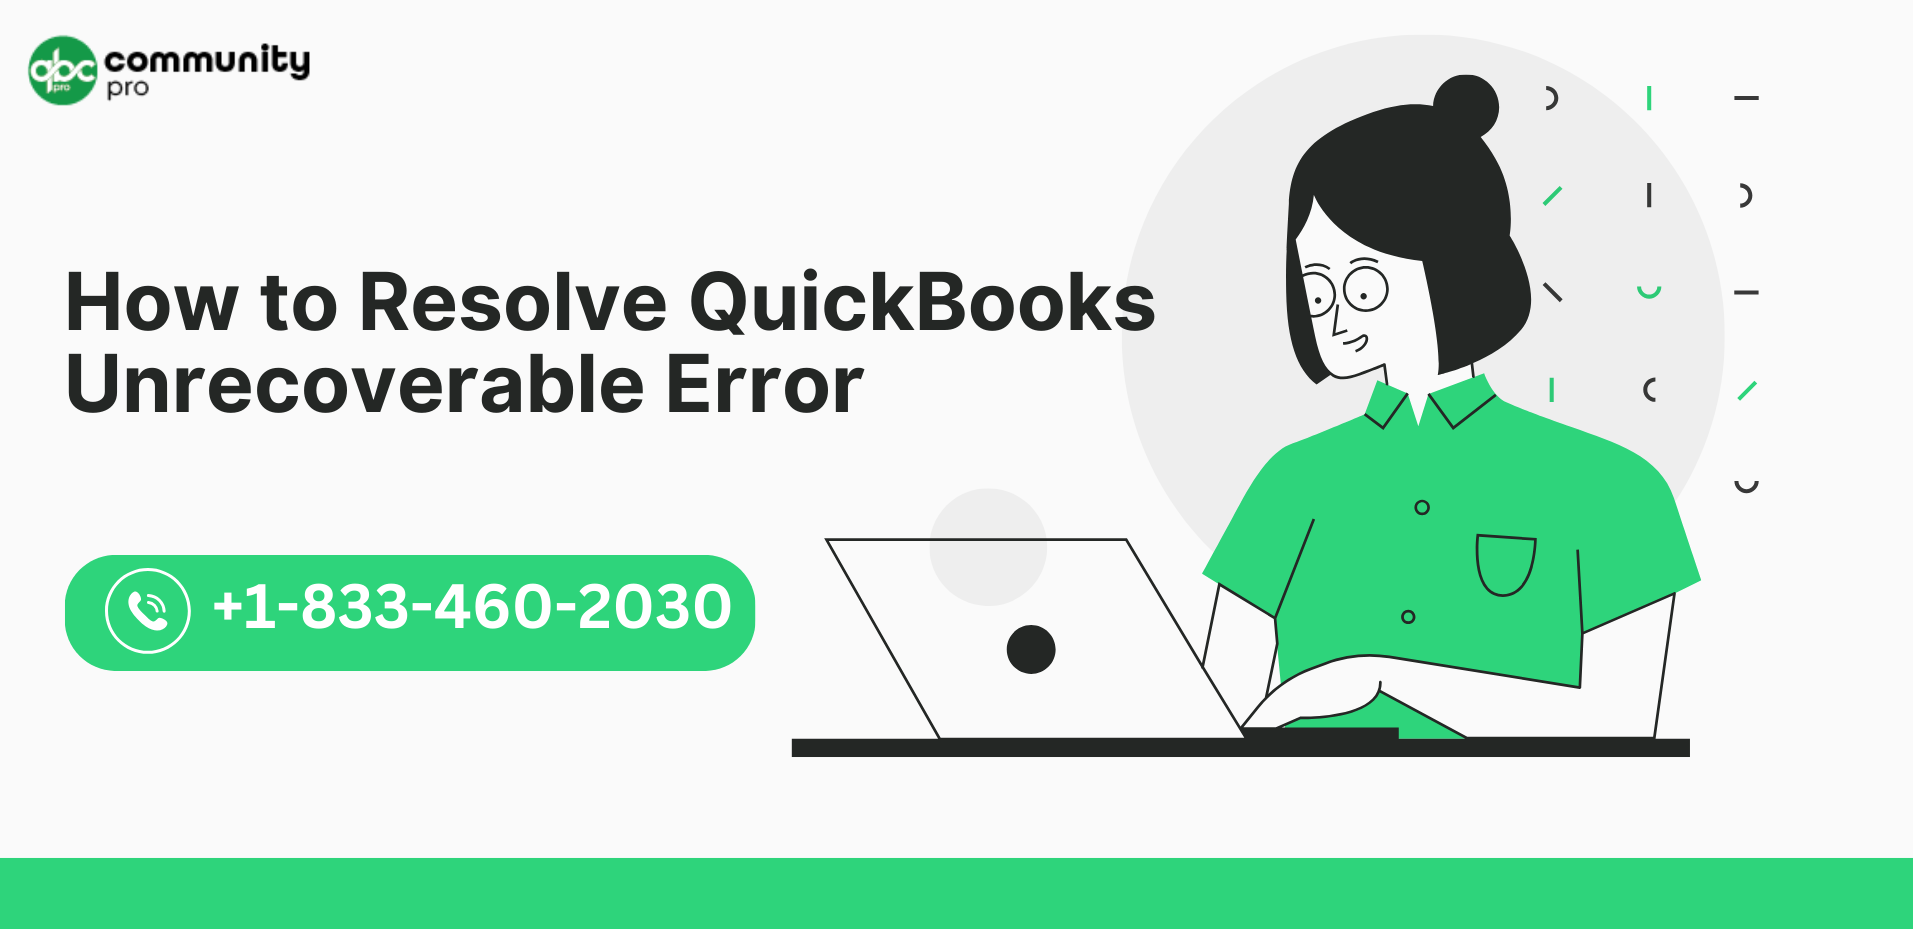 How to Resolve QuickBooks Unrecoverable Error: Quick Solutions - Blogspostnow.com